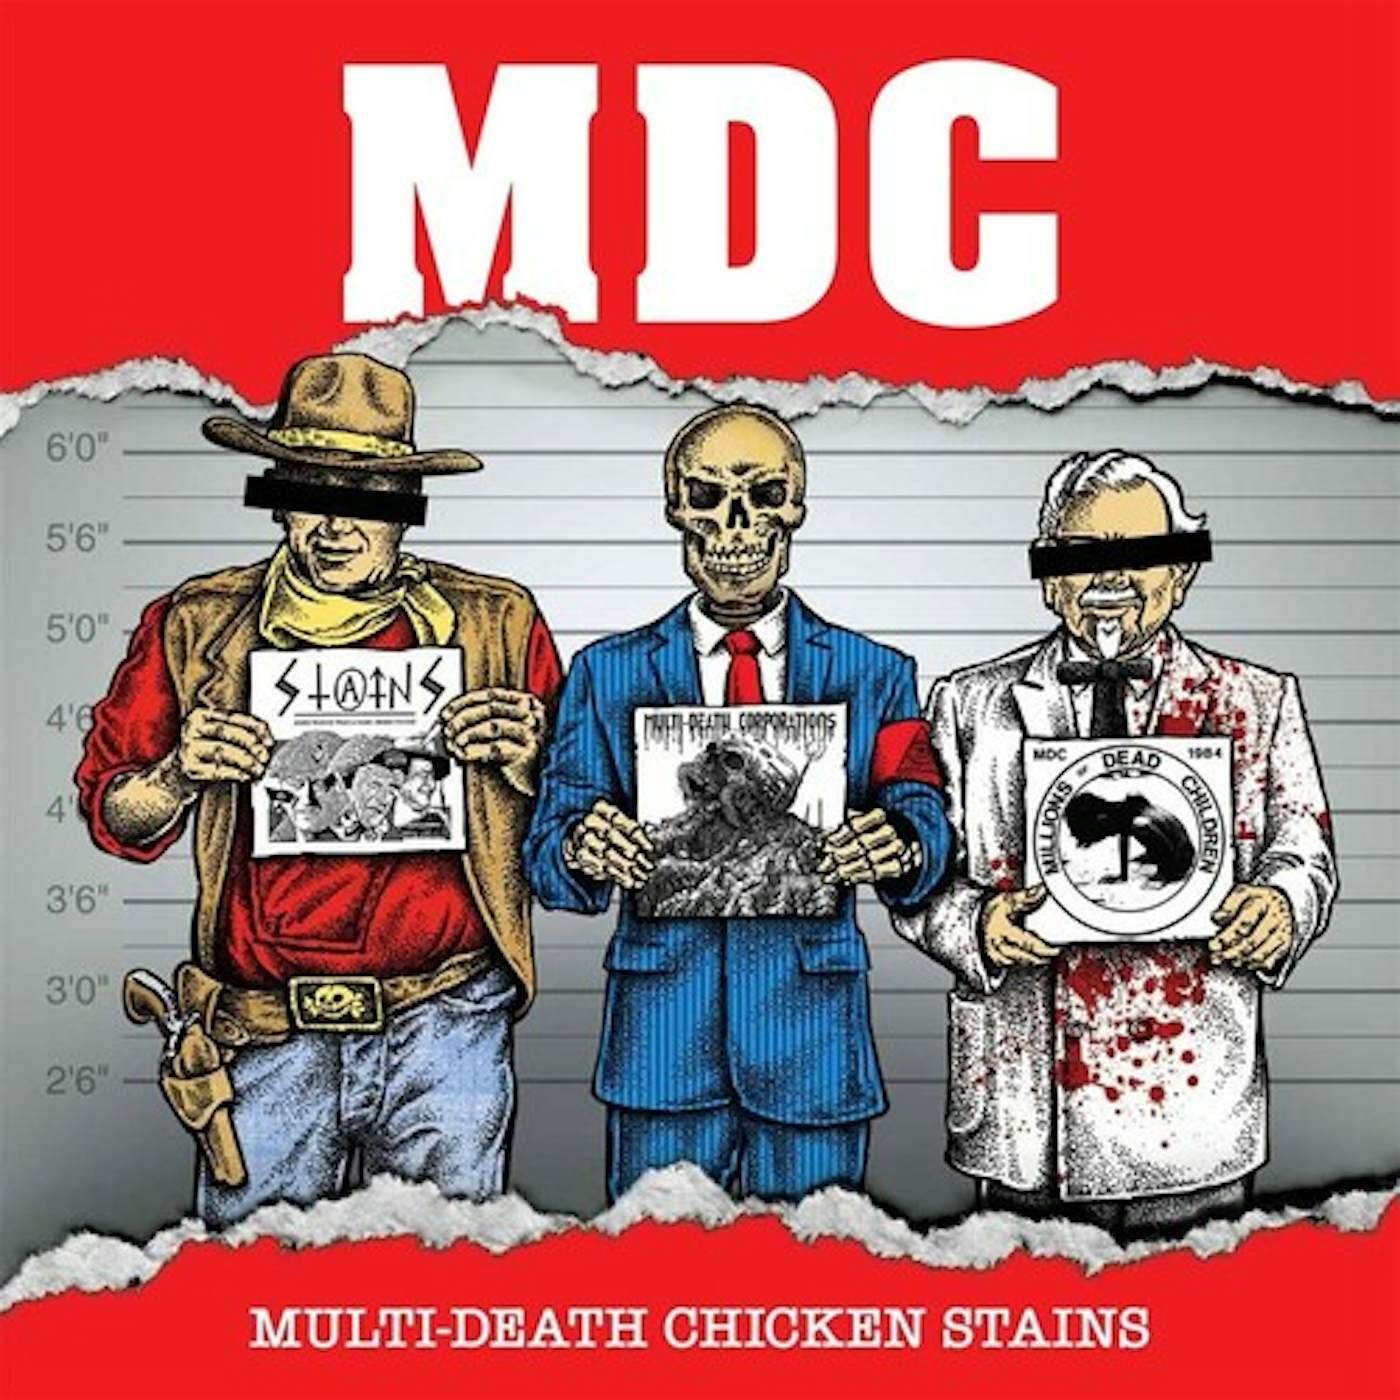 MDC MULTI DEATH CHICKEN STAINS 12 - MILLENNIUM EDITION Vinyl Record